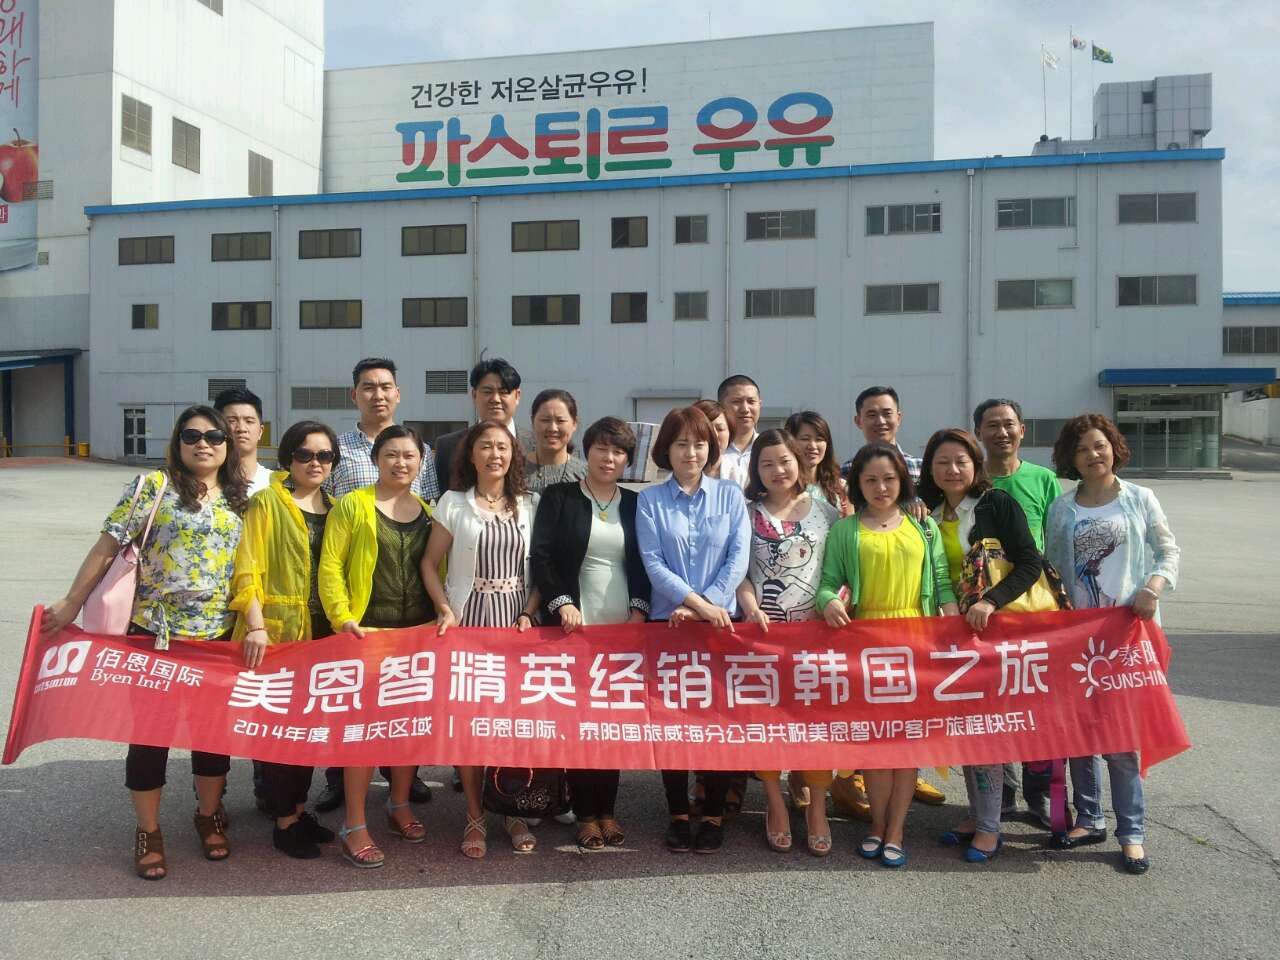 2014年6月 ,佰恩(北京)国际贸易有限公司组织美